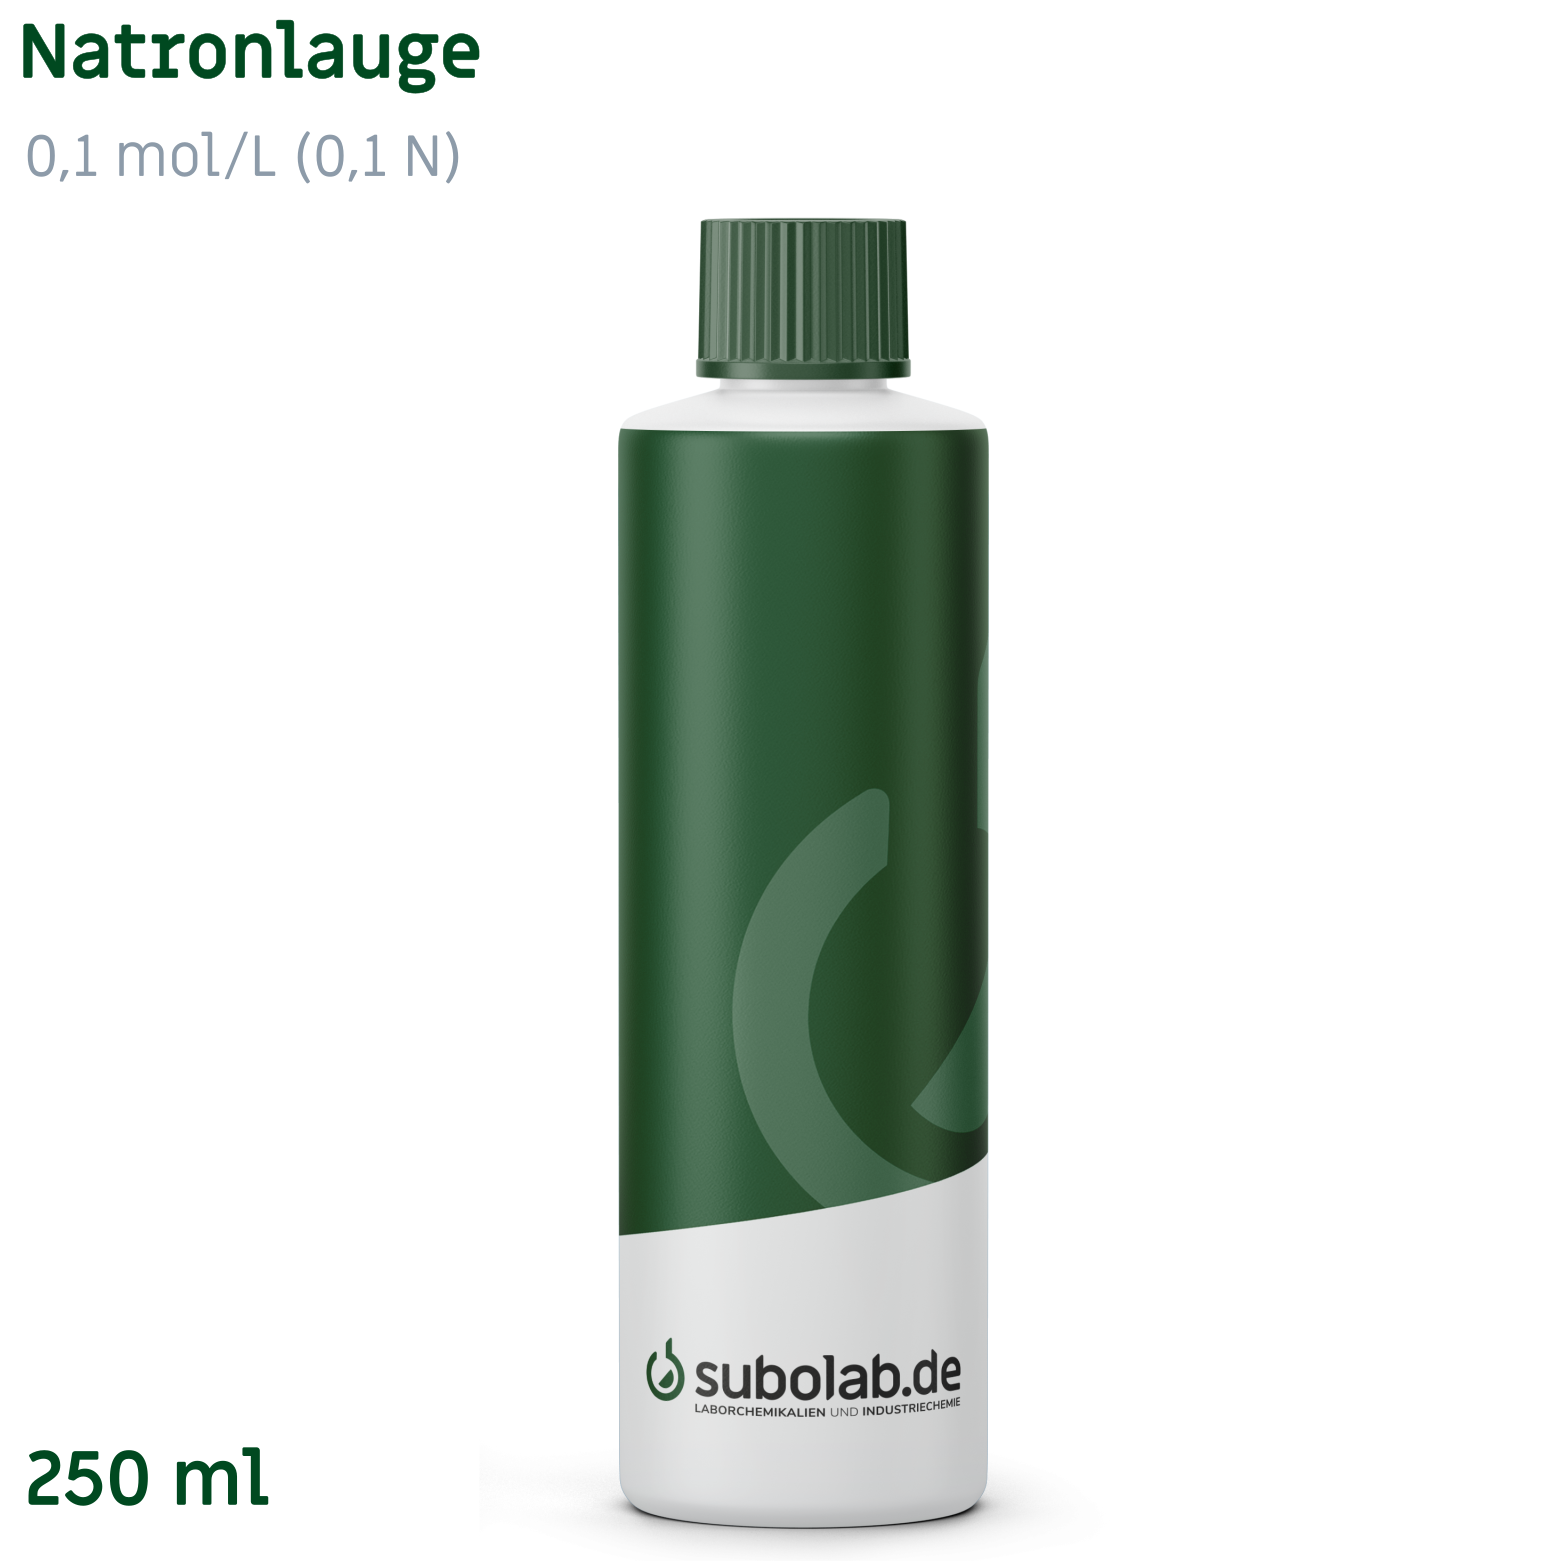 Bild von Natronlauge 0,1 mol/L (0,1 N) (250 ml)